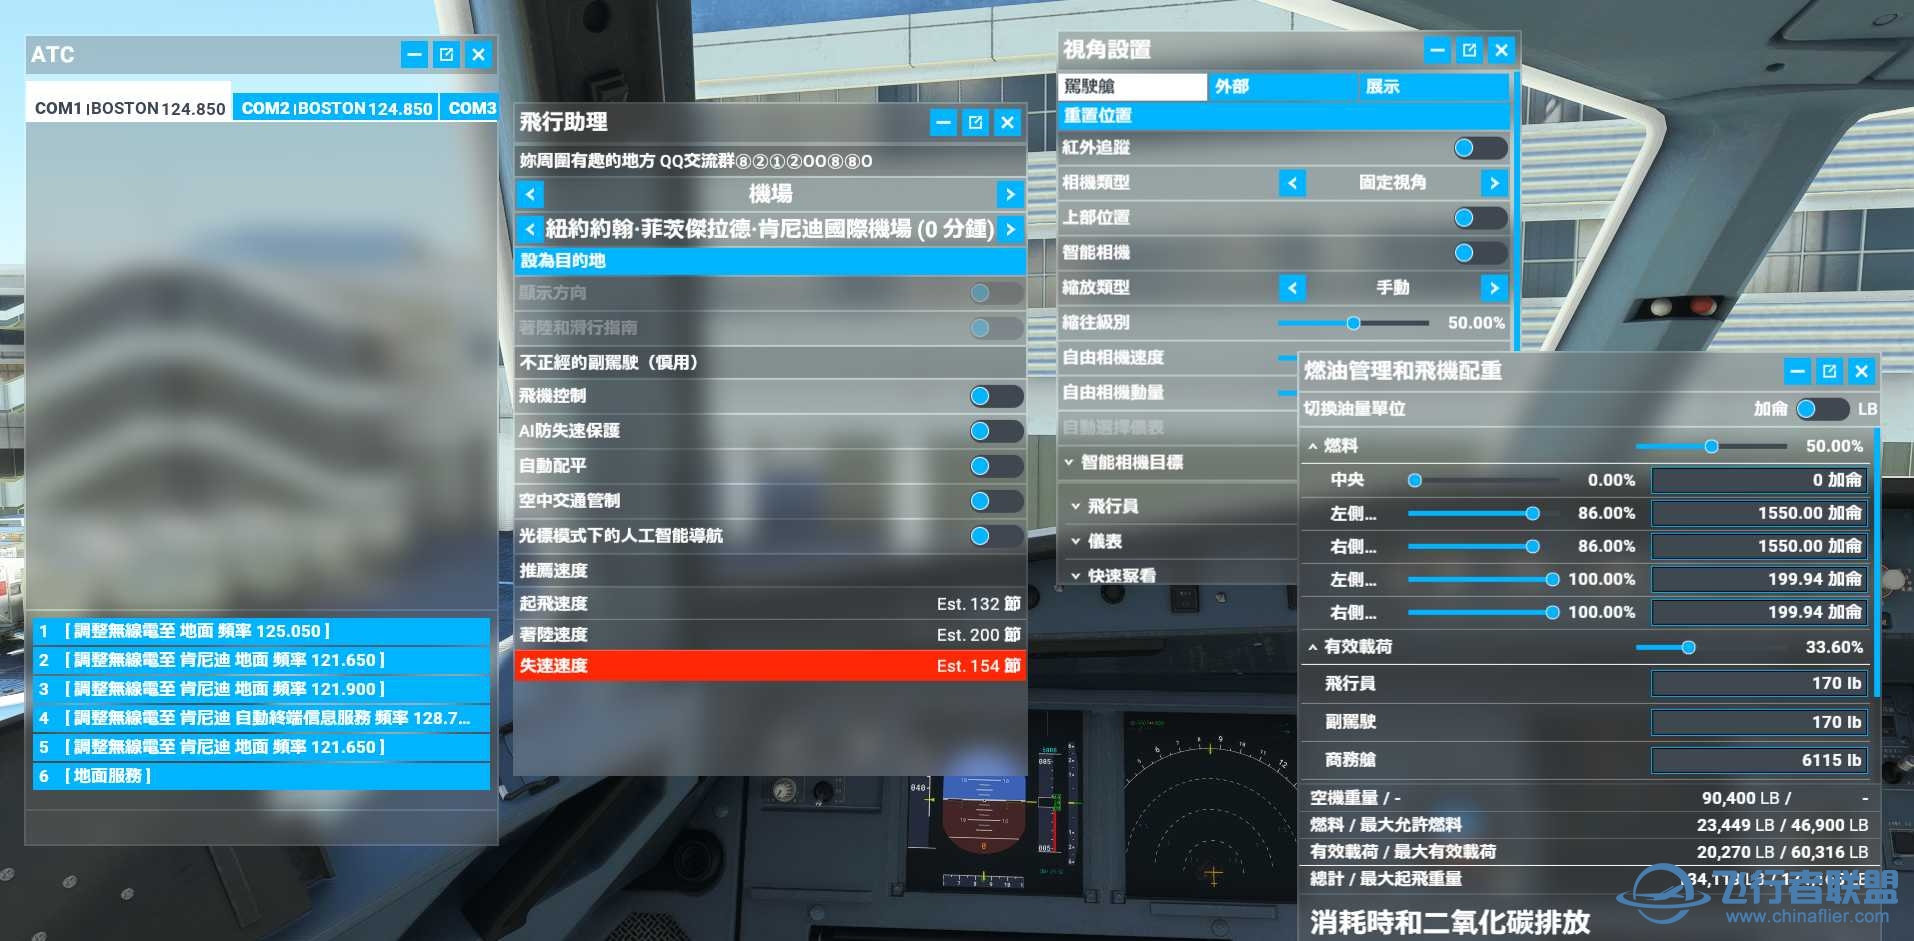 微软模拟飞行2020 1.18.14 繁体中文4.0发布版-7174 